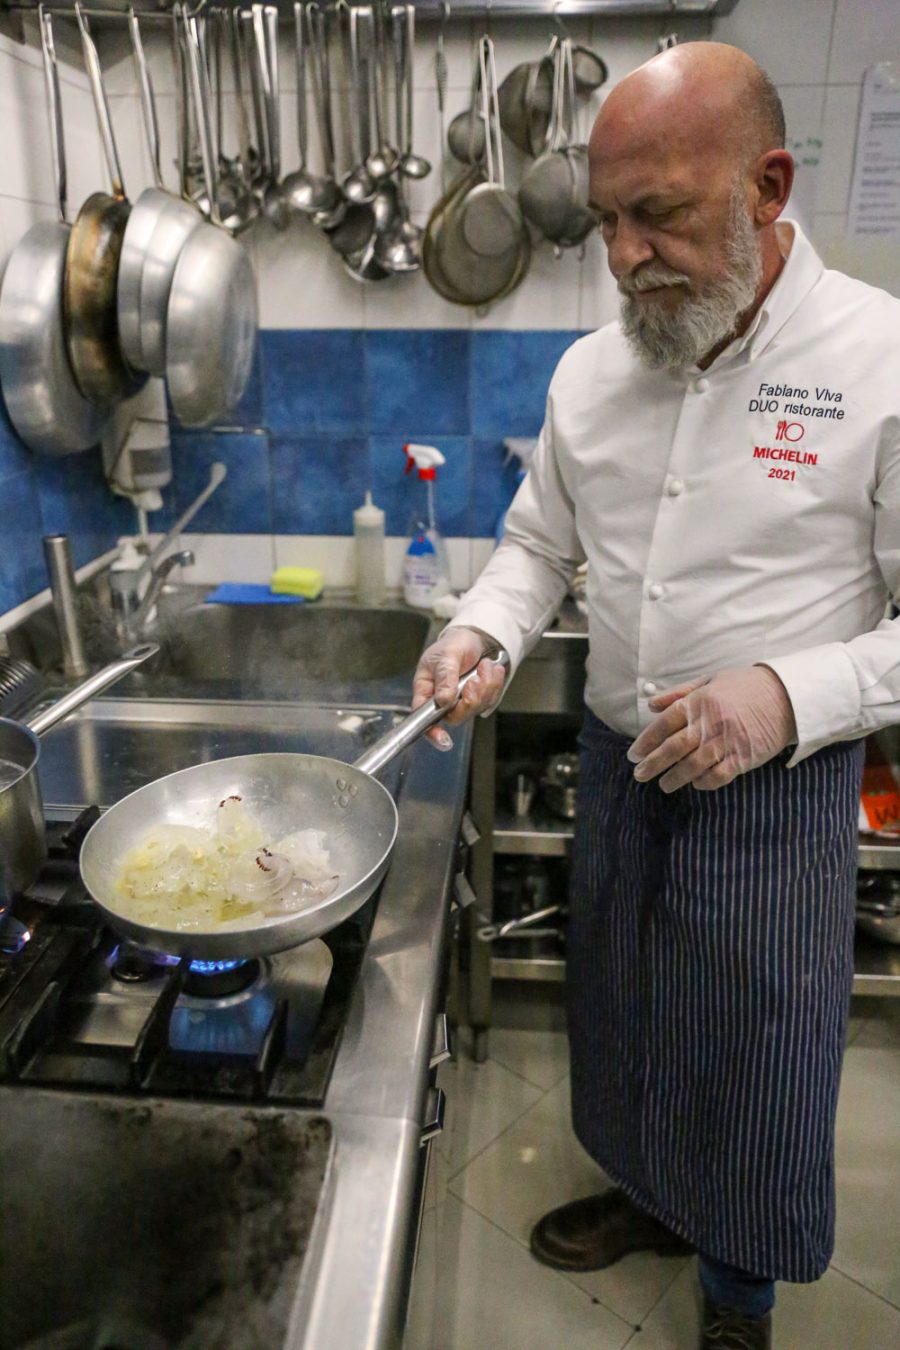 Chef Fabiano Viva cooking jellyfish